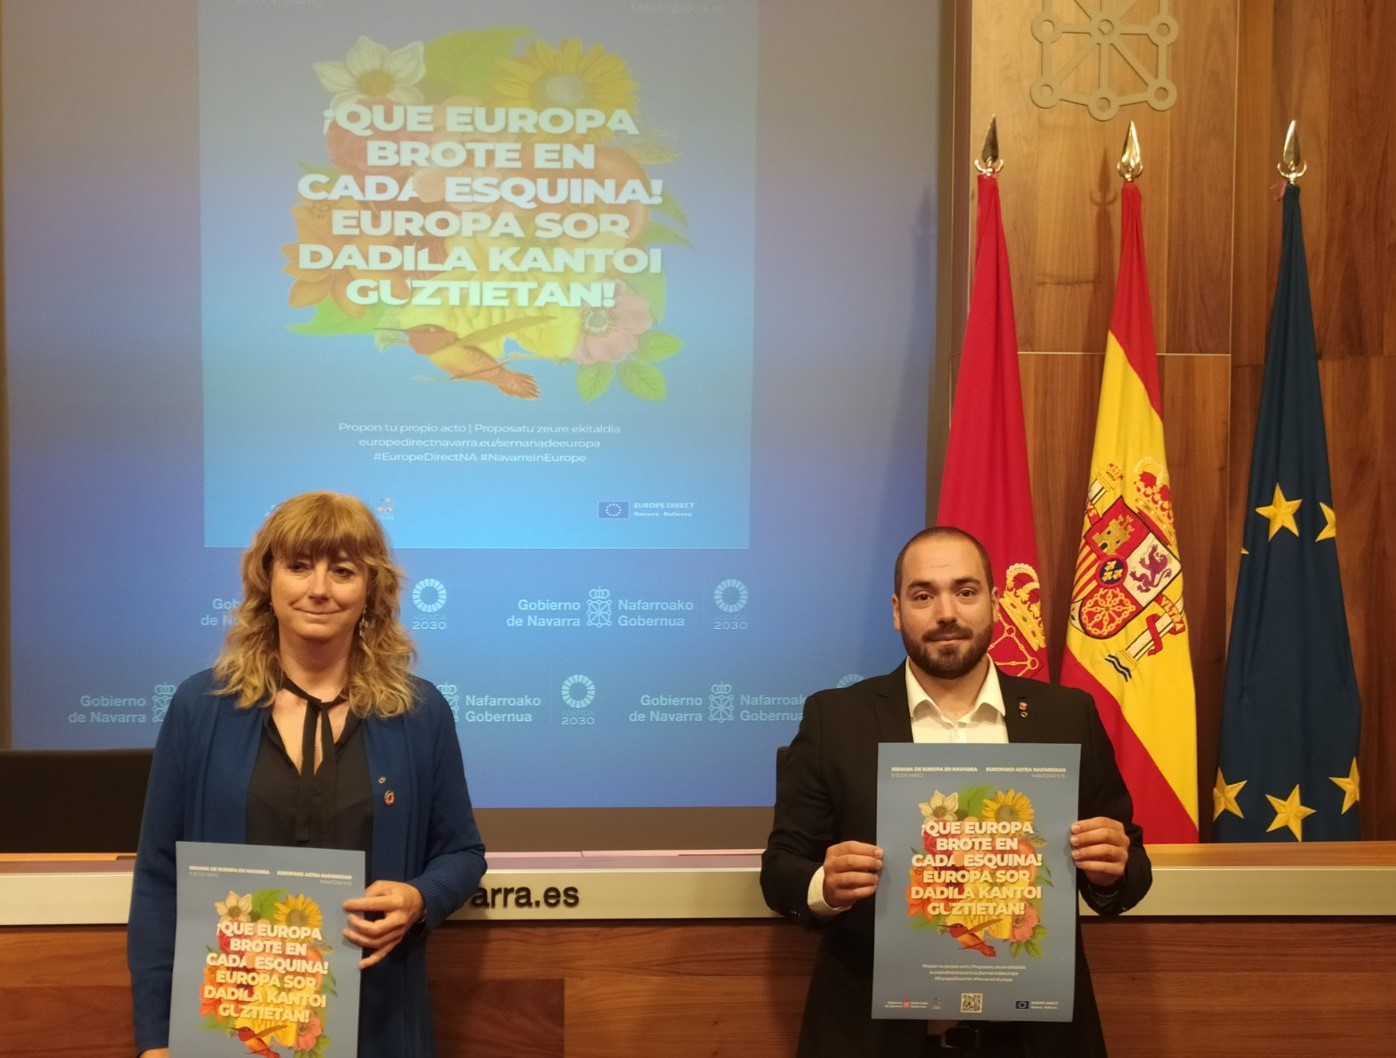 De izquierda a derecha, la consejera Ollo y el director general Sergio Pérez en la presentación del programa de actividades: "¡Que Europa brote en cada esquina!", para celebrar la Semana de Europa en Navarra.